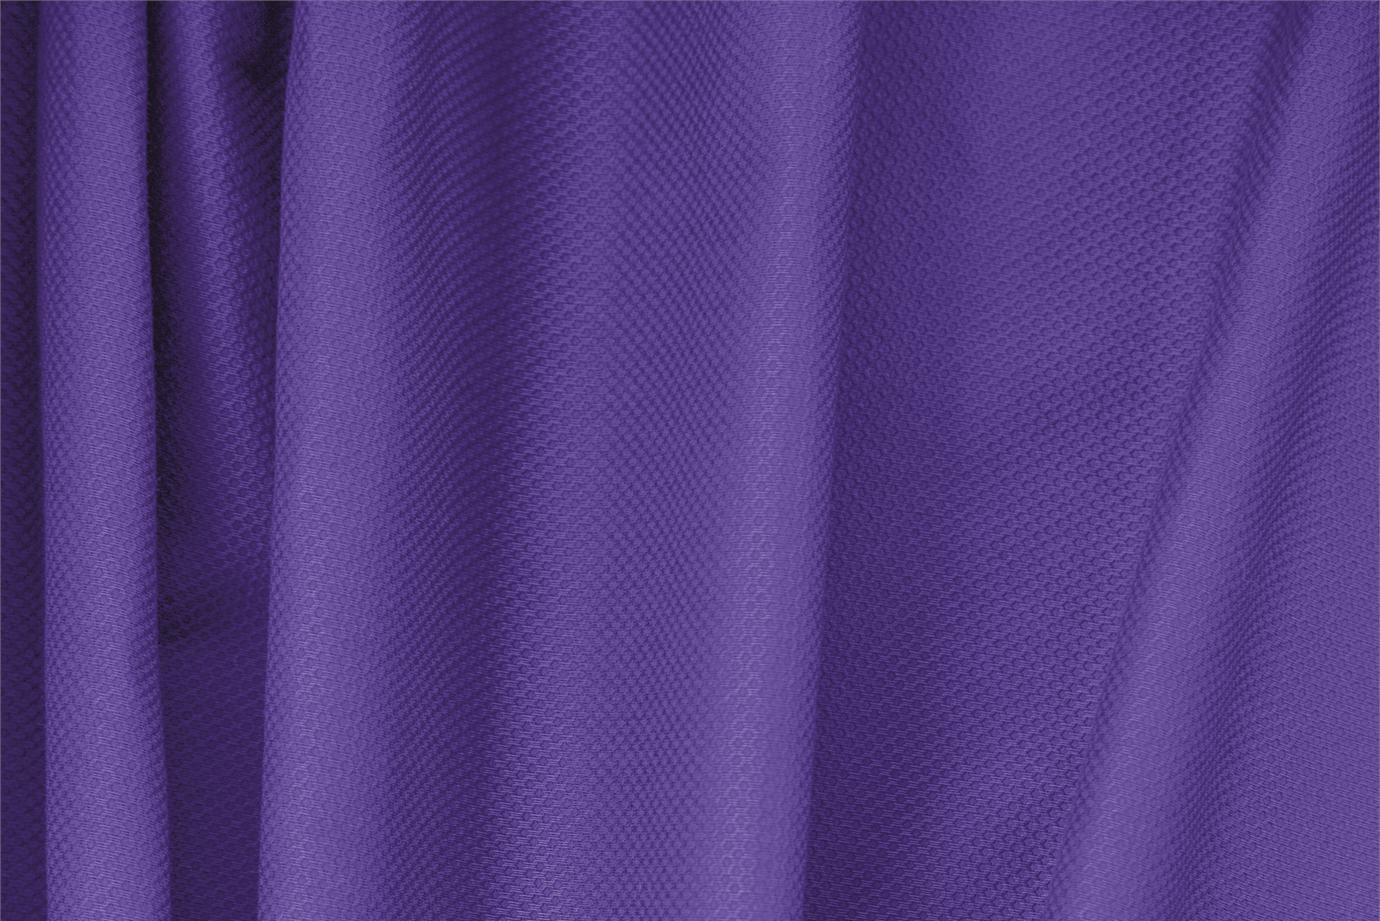 Tissu Piquet Stretch Violet iris en Coton, Stretch pour vêtements